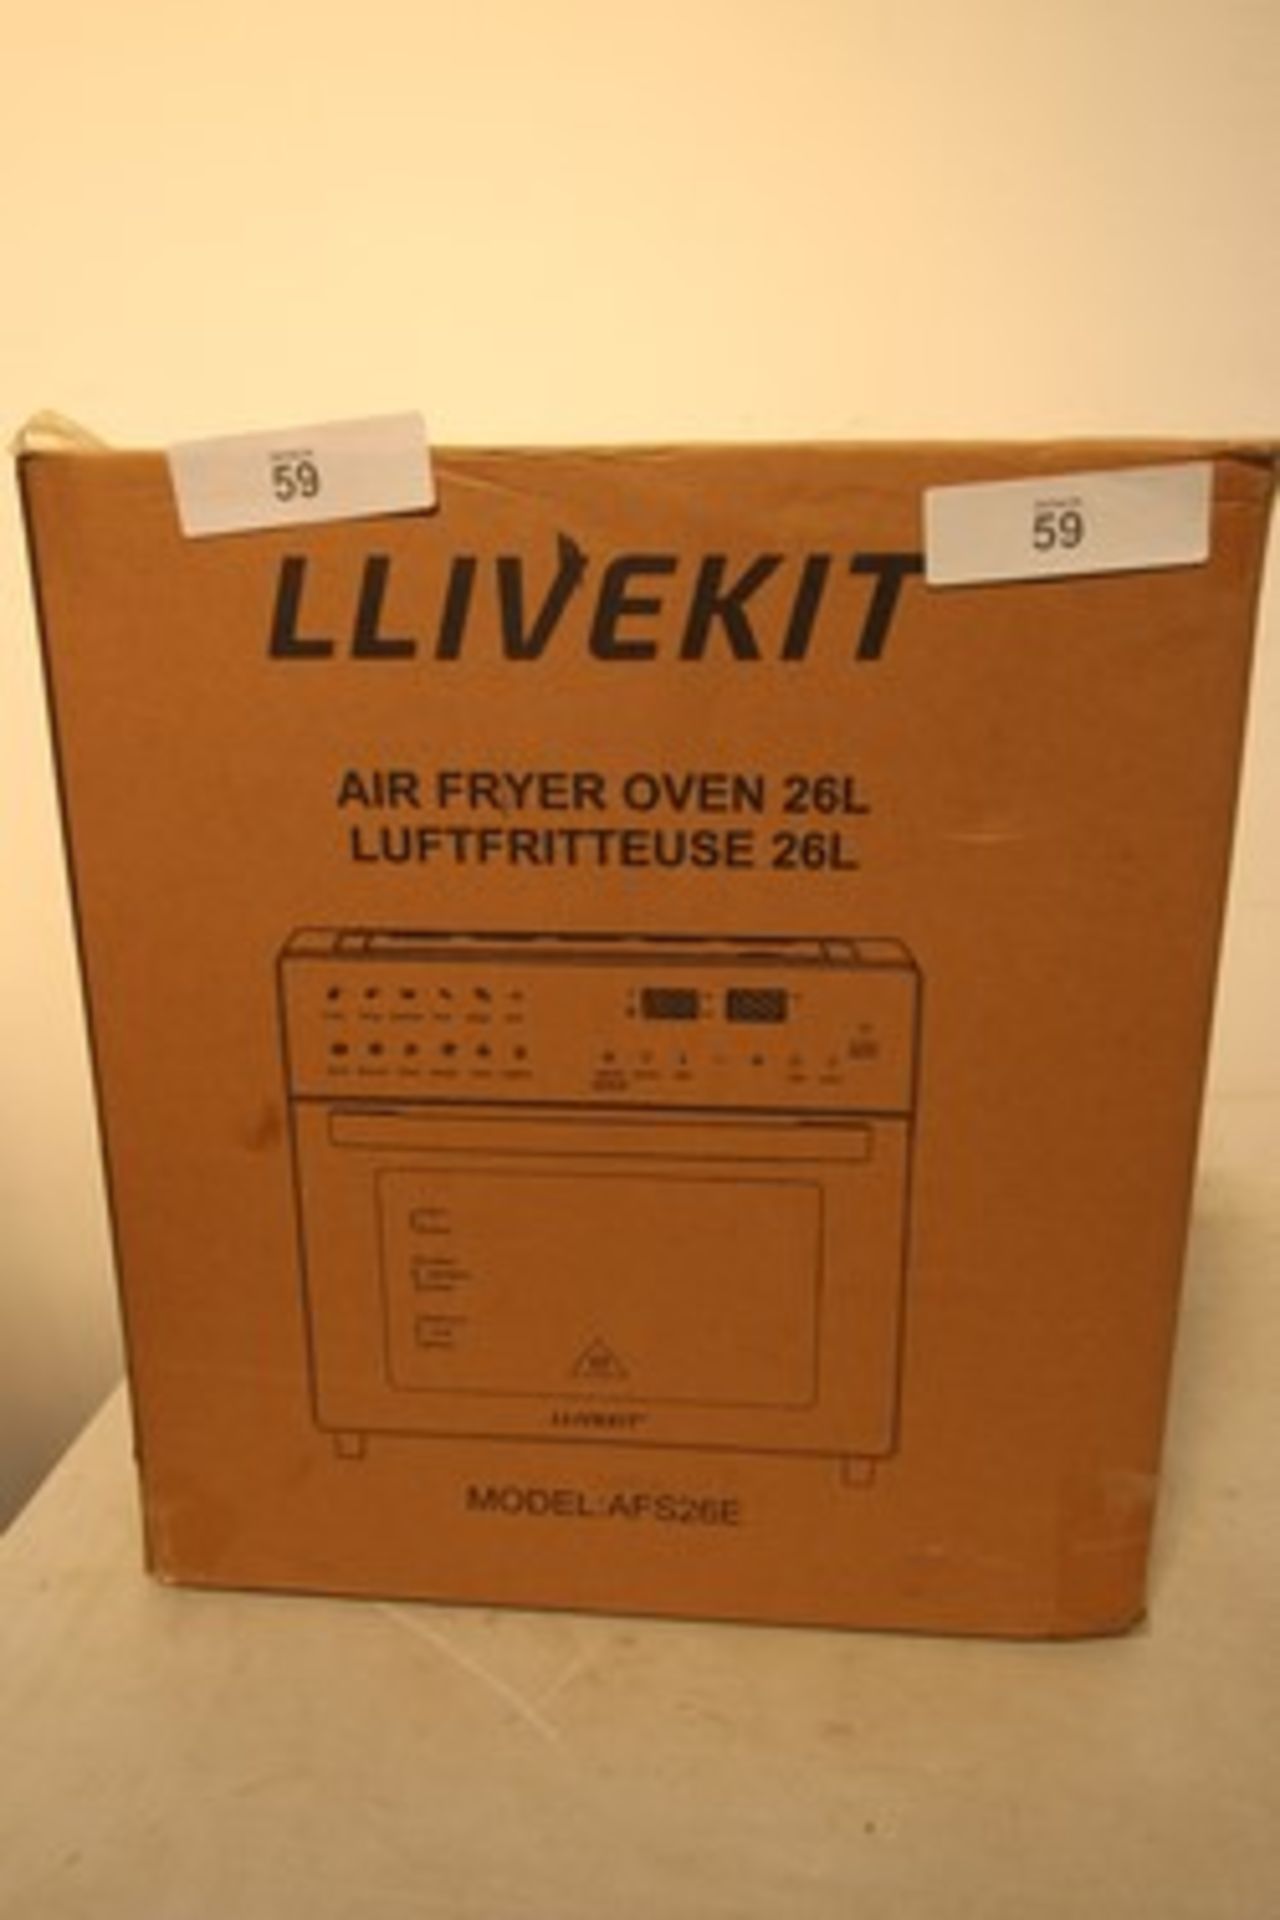 1 x Llivekit 26L air fryer oven, model No: AFS26E - sealed new in box (ES2)